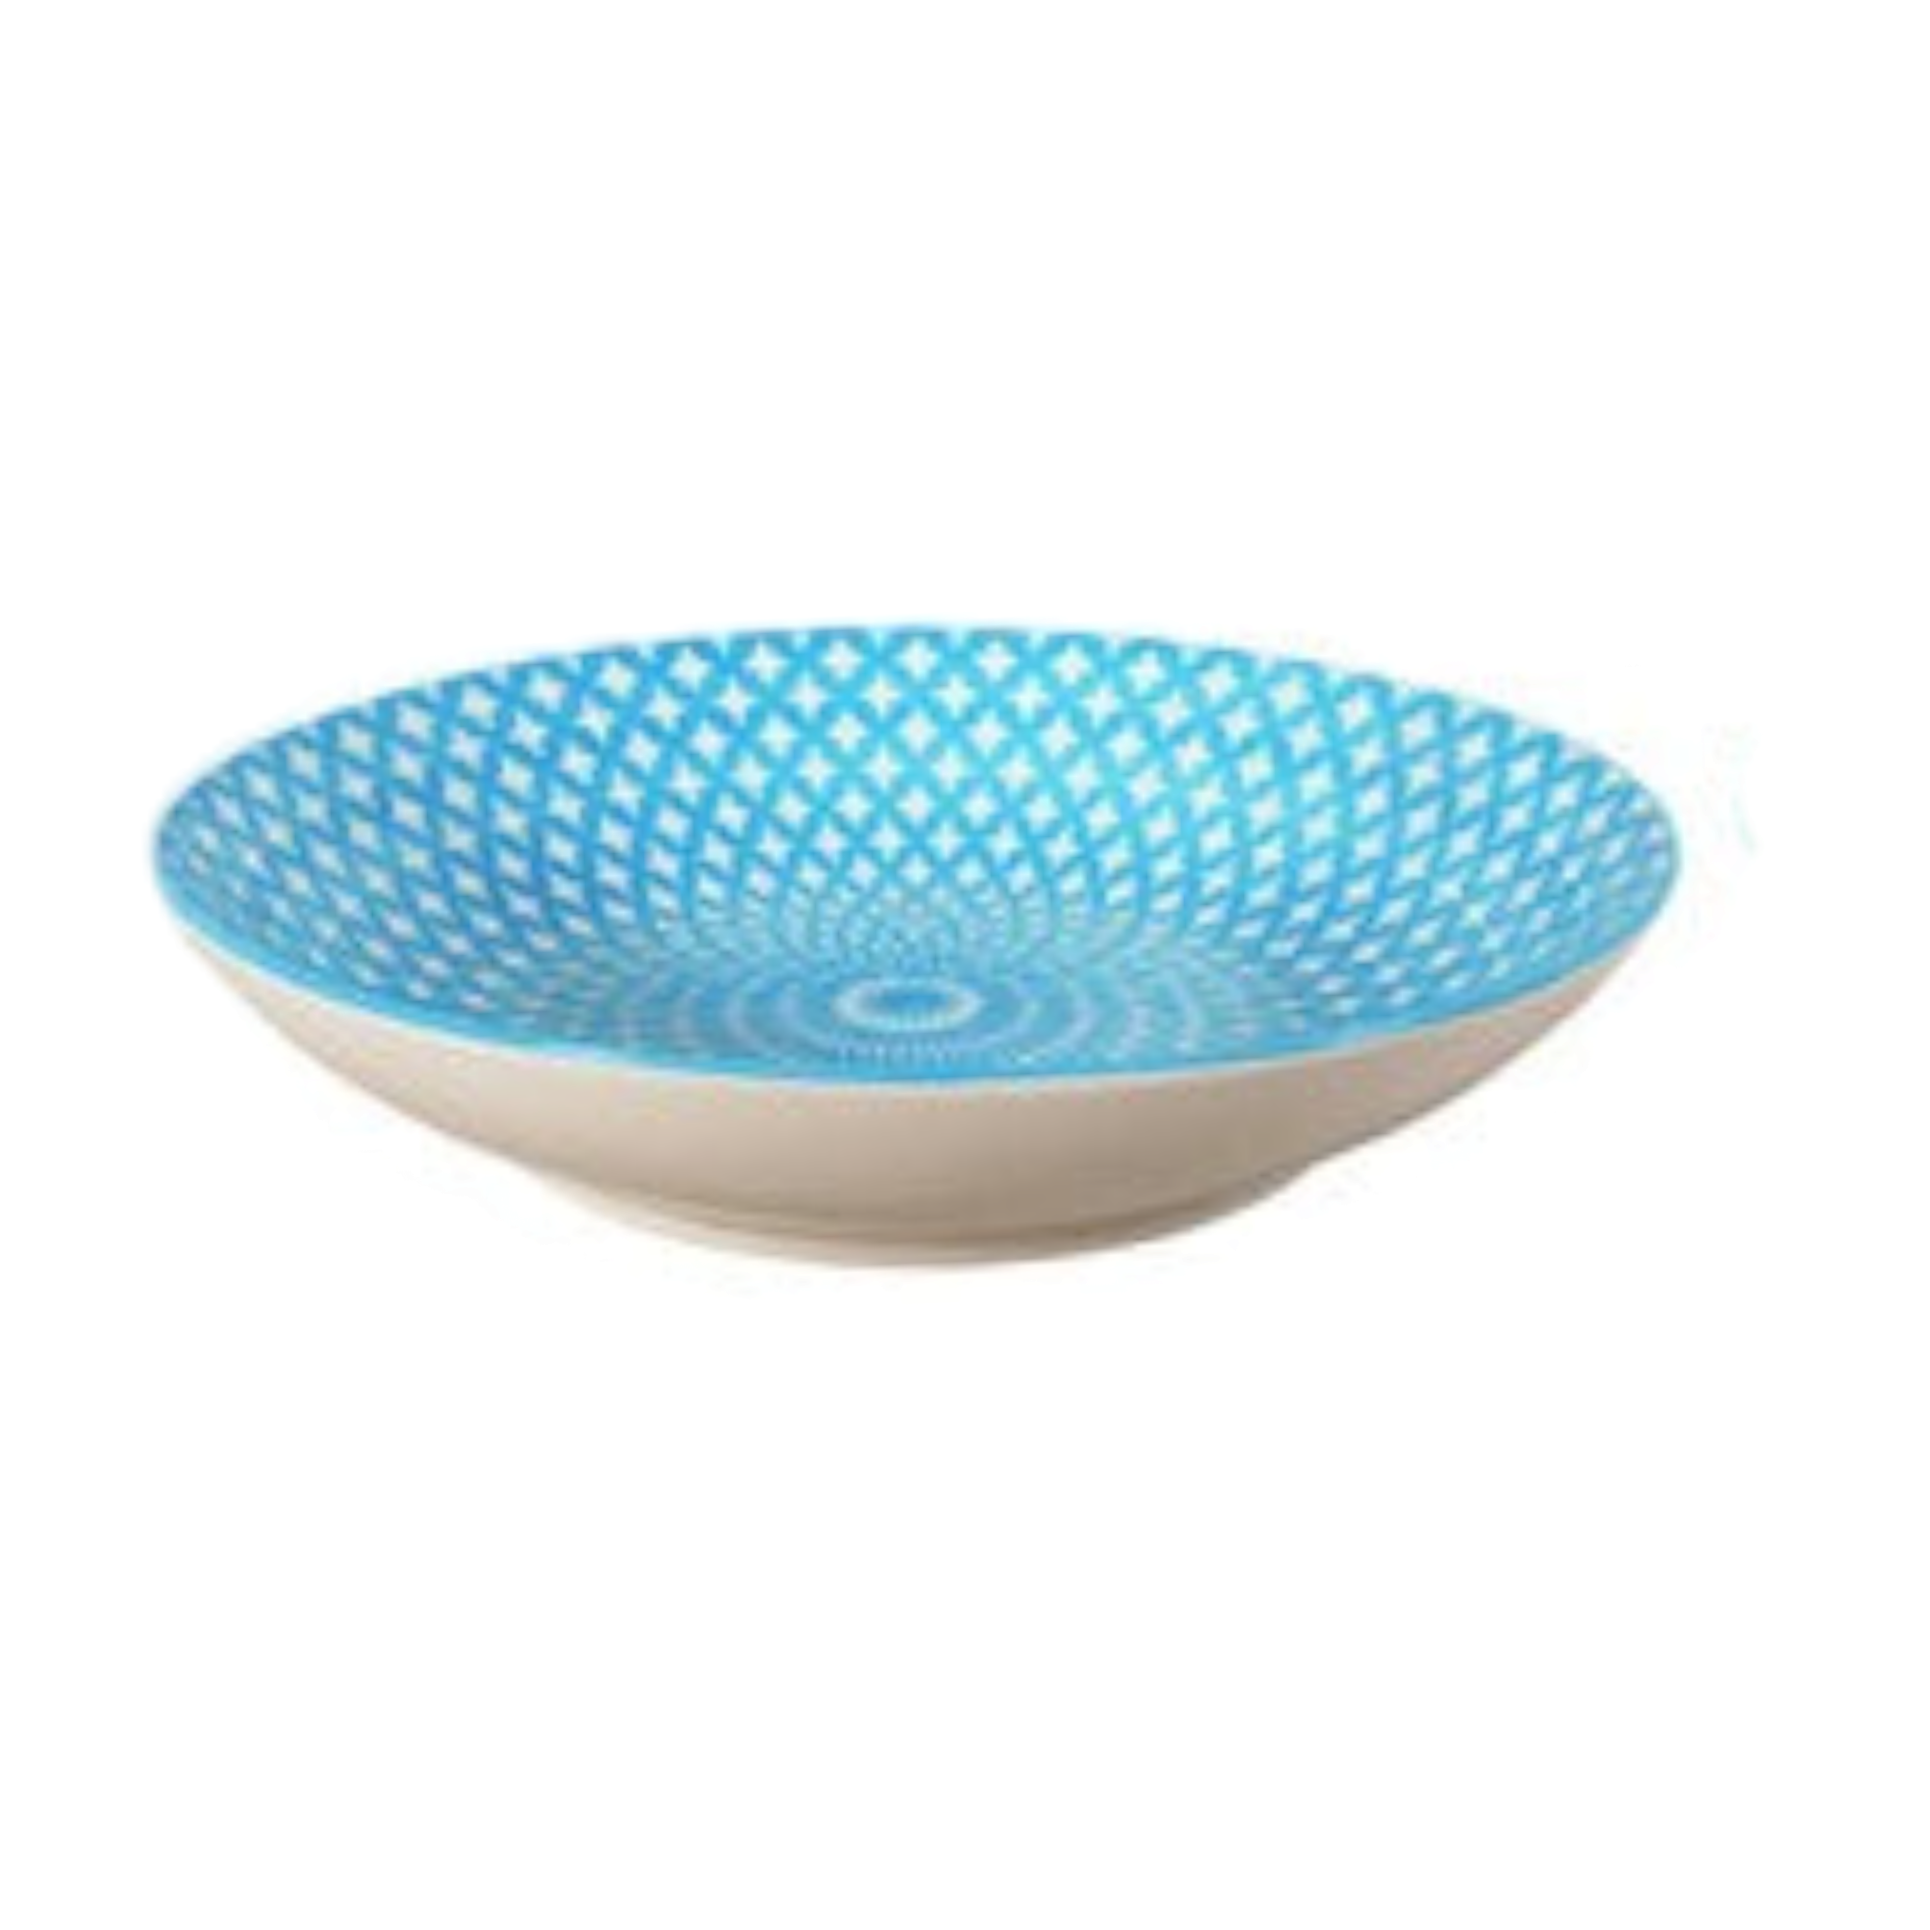 Ceramic Ethnic Bowl 8.5Inch 32503